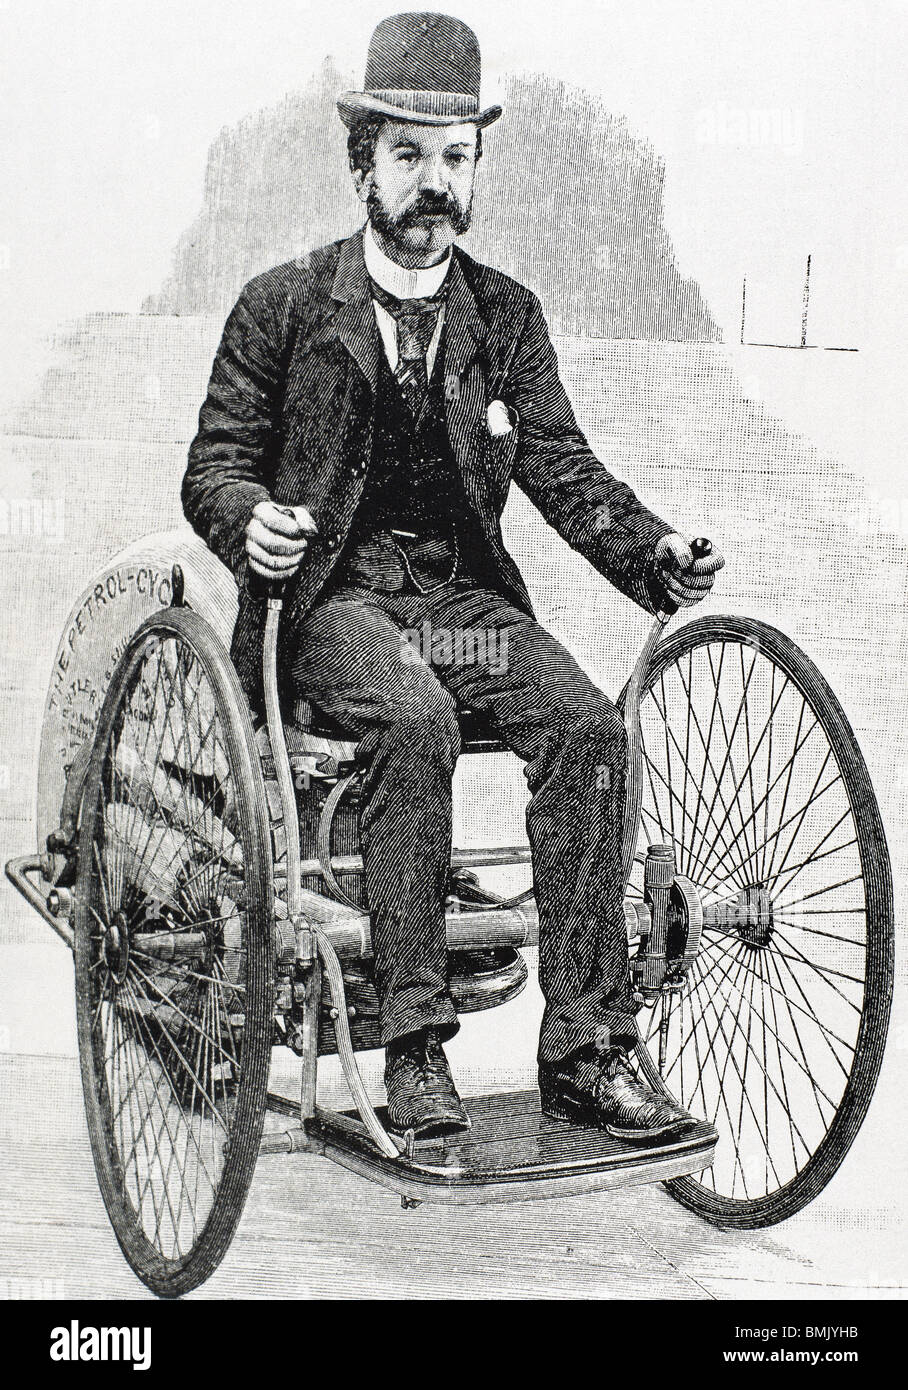 DIE BENZIN-ZYKLUS. Ein Benzin-Motor ist auf einem Fahrrad installiert. USA.  Gravur des neunzehnten Jahrhunderts Stockfotografie - Alamy